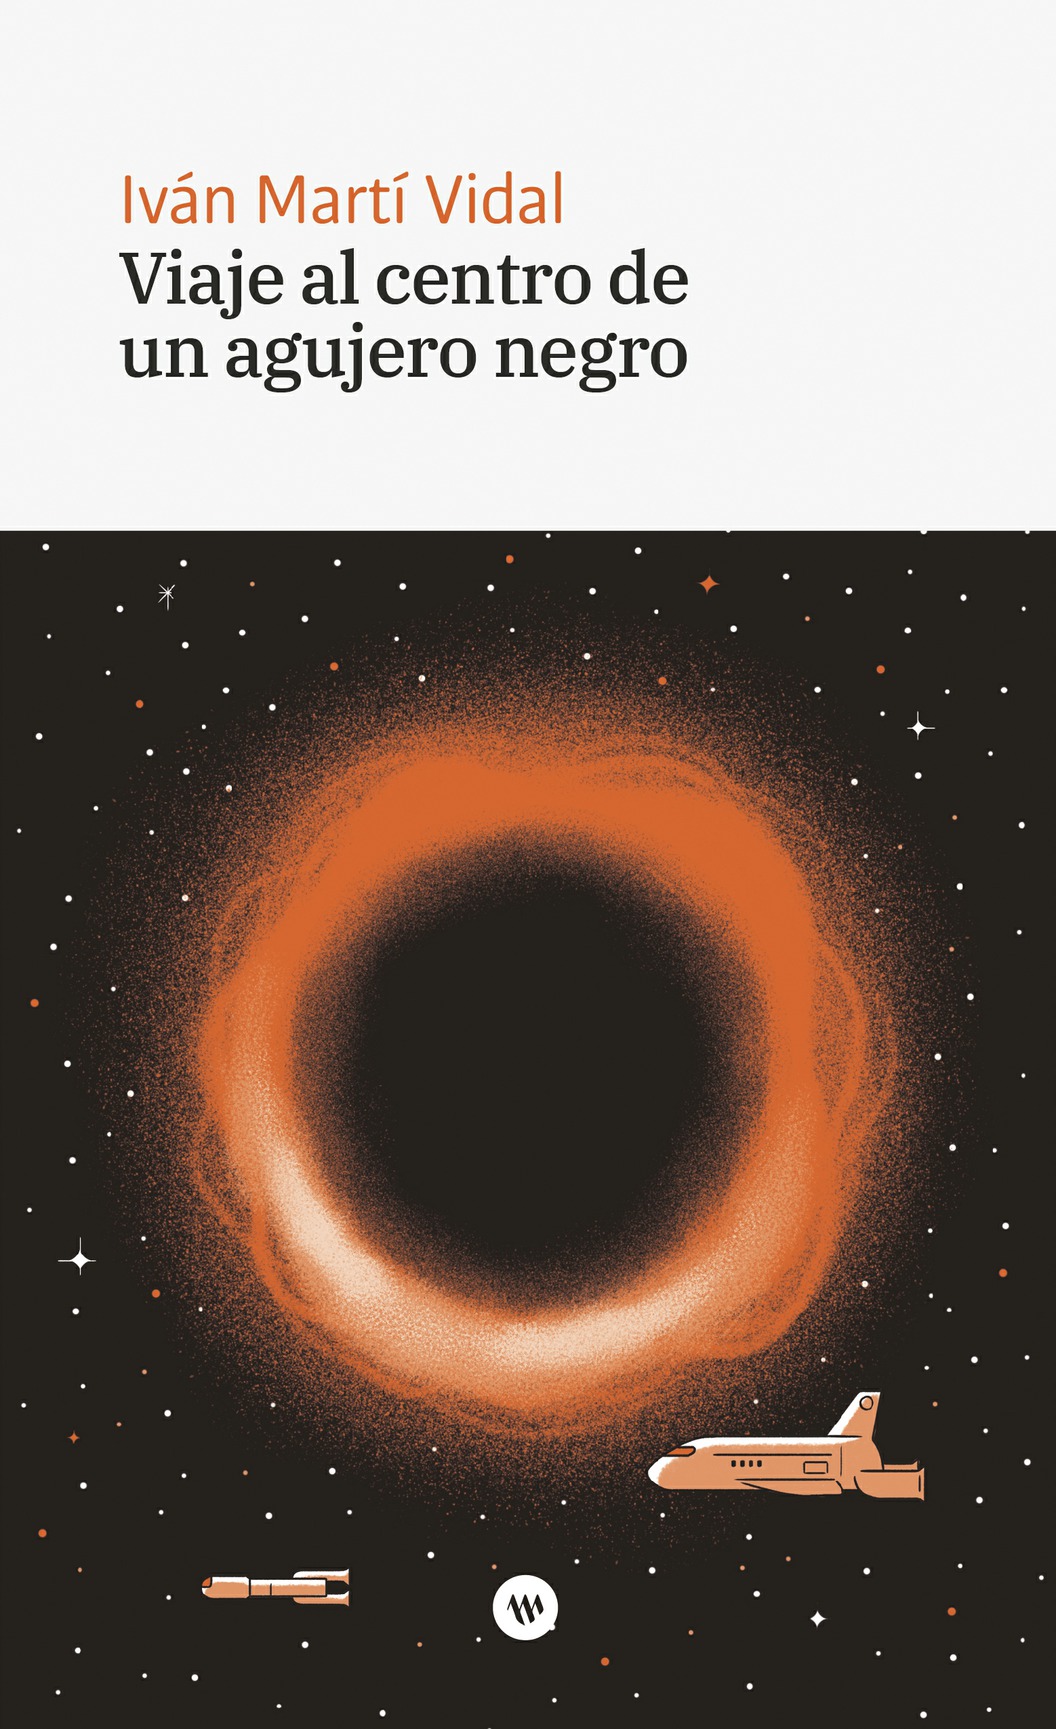 'Viaje al centro de un agujero negro', el segundo título de la colección Urània